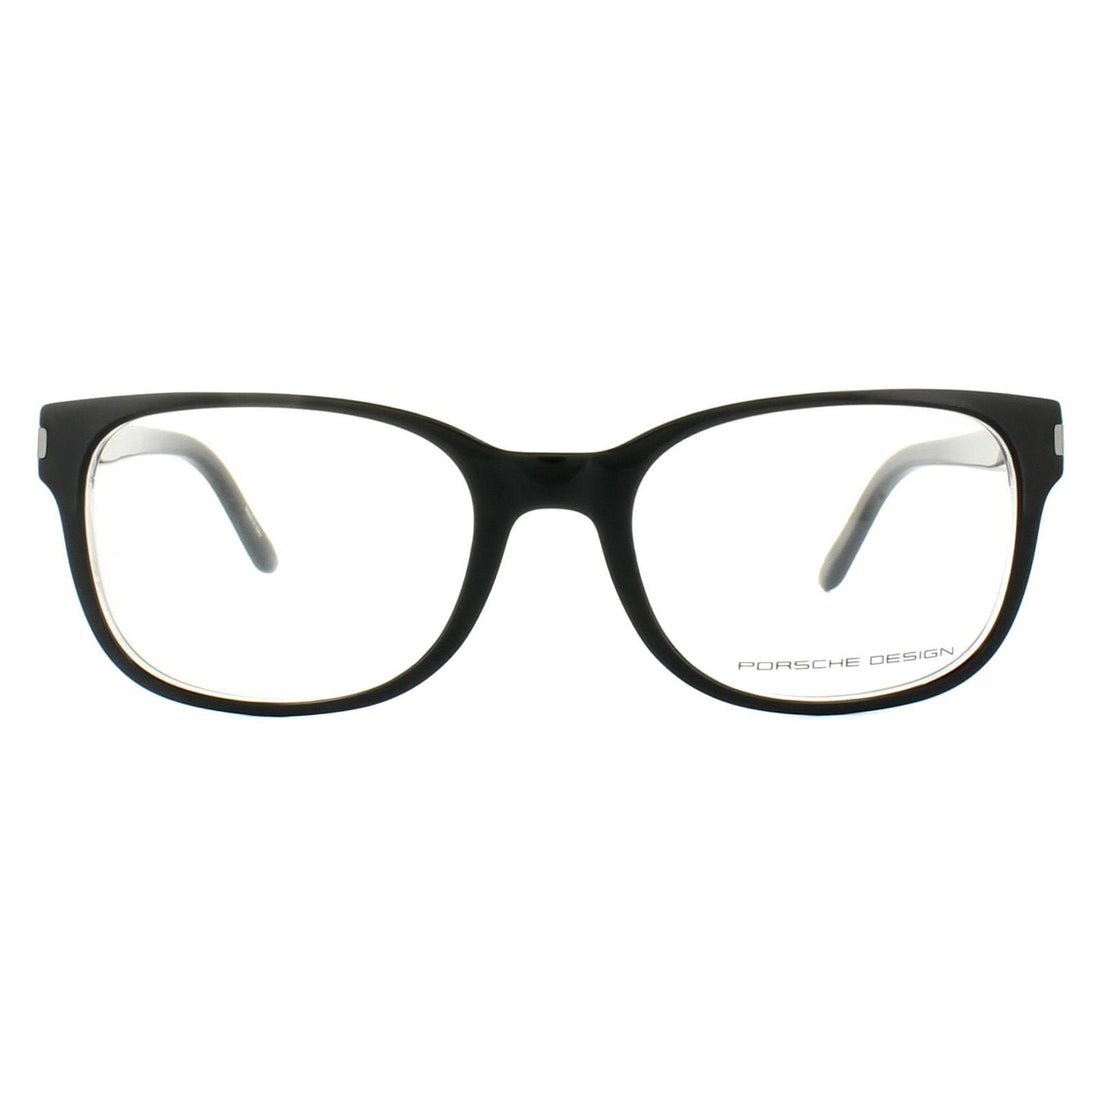 Porsche Design P8250 Glasses Frames Black